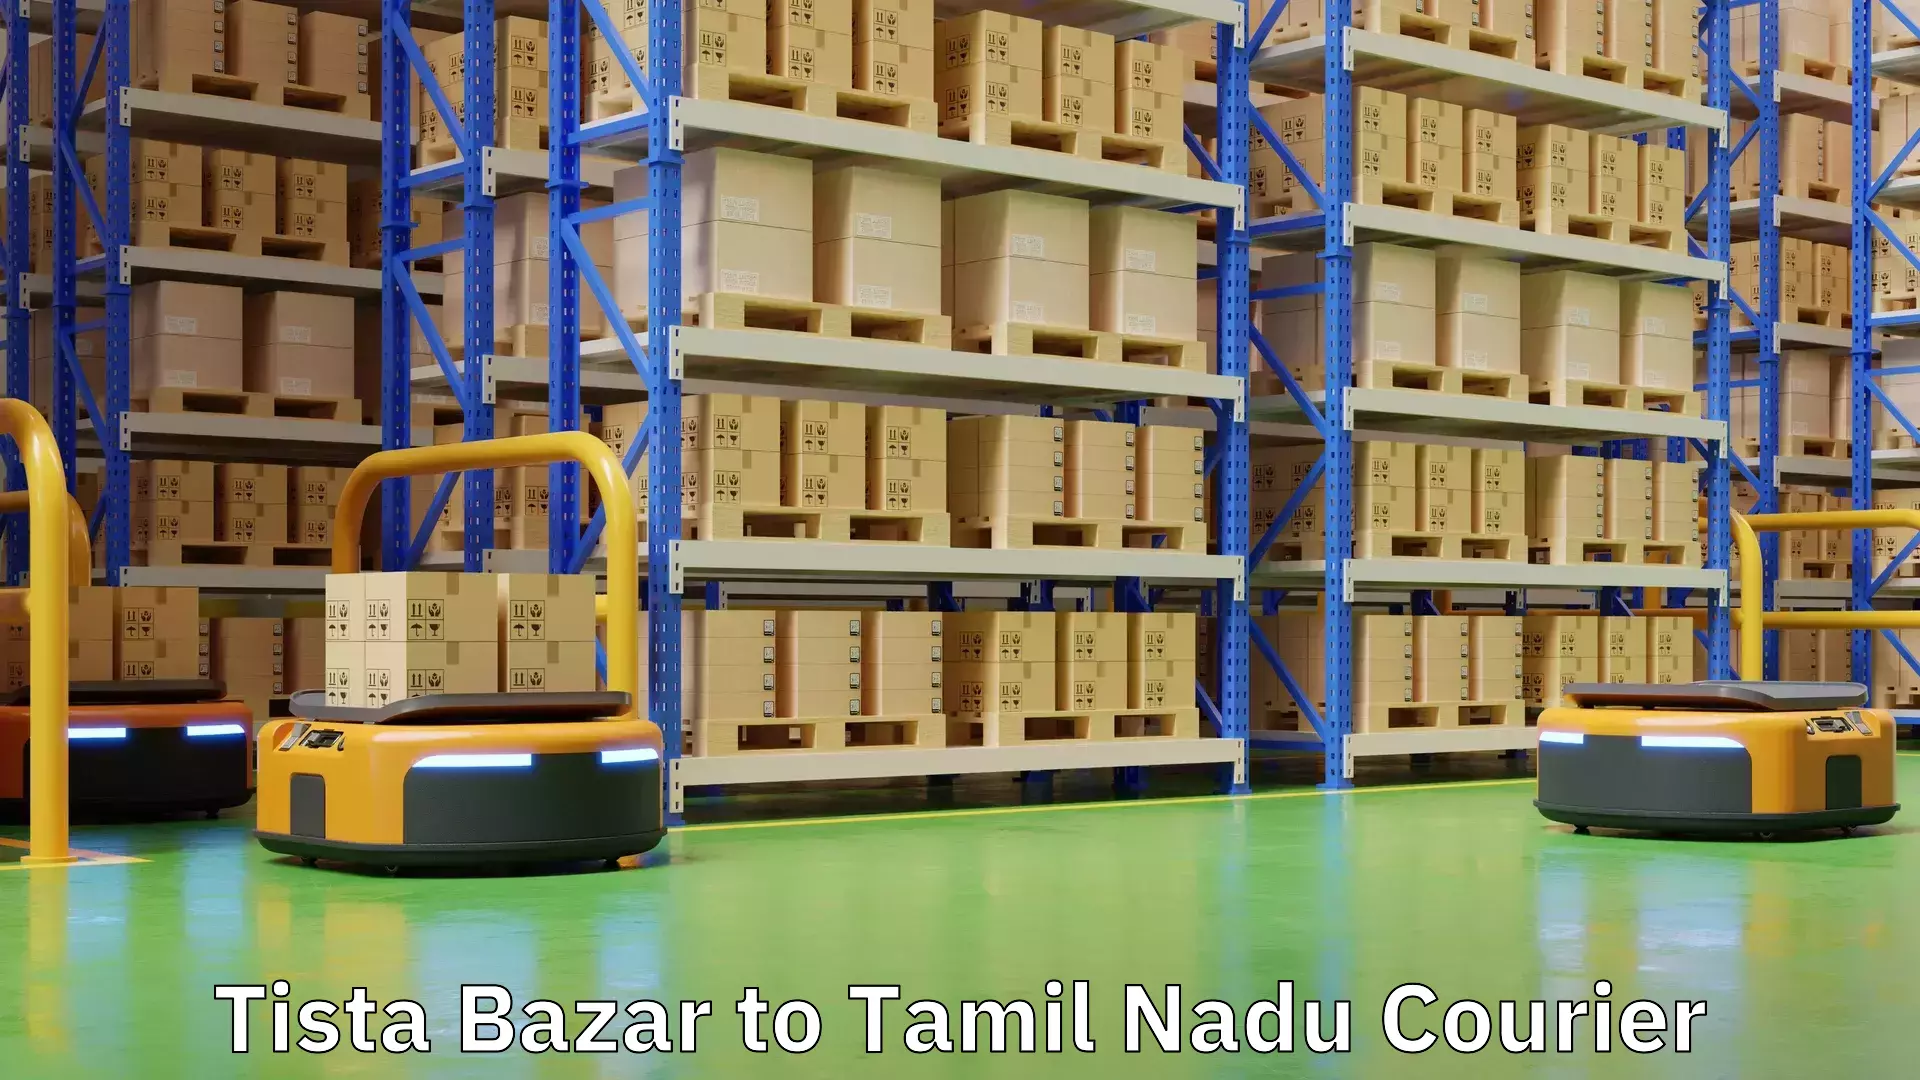 Efficient shipping platforms Tista Bazar to Tamil Nadu